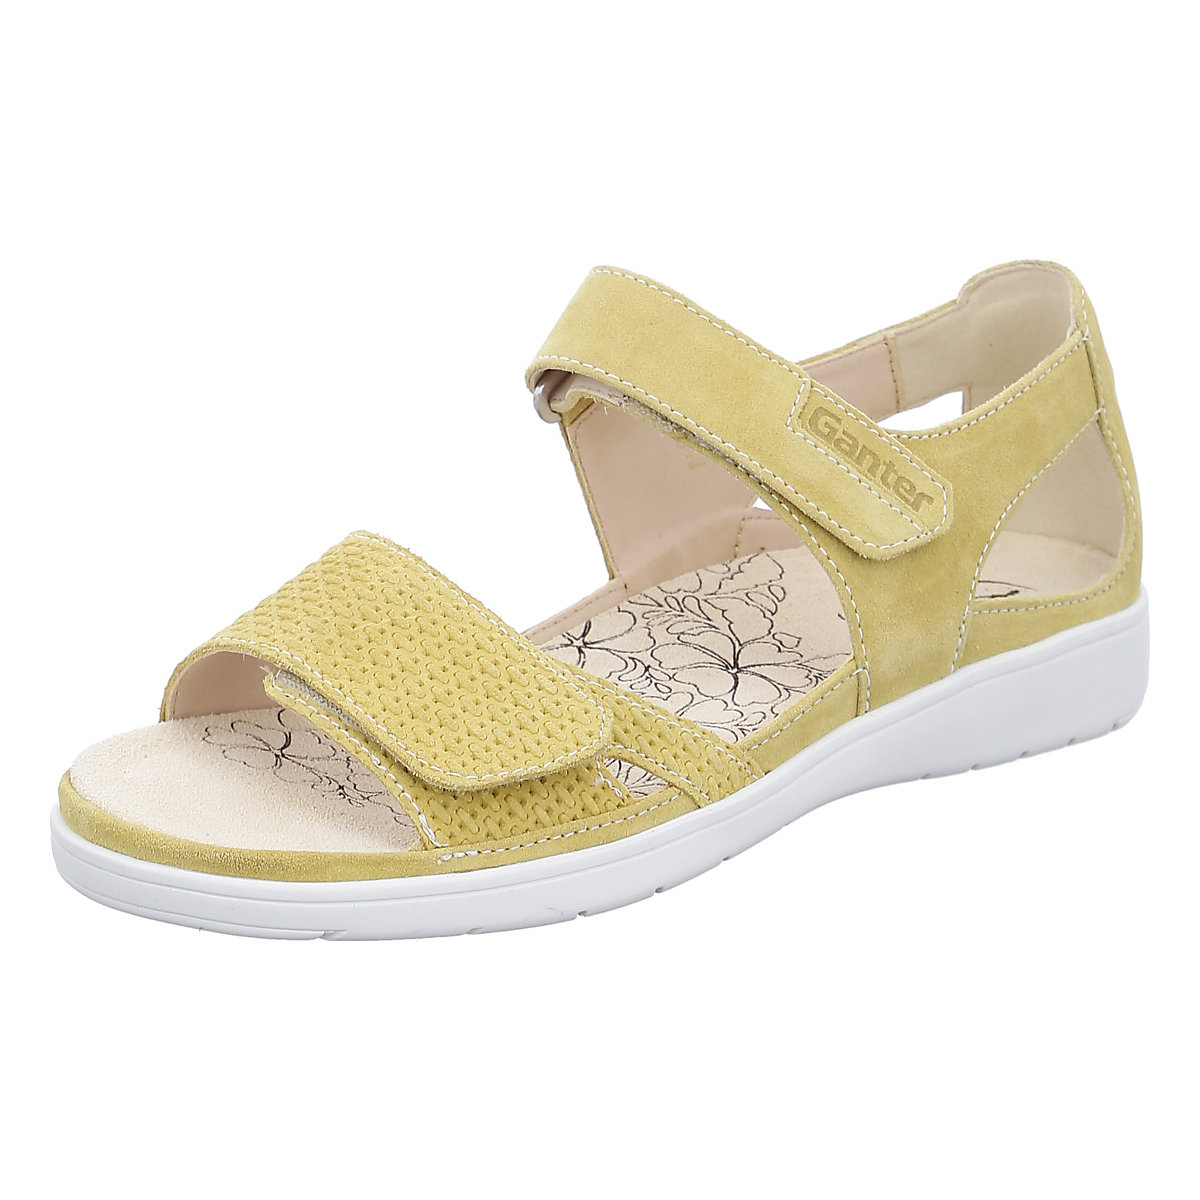 Ganter Gina Sandalette Klassische Sandaletten gelb